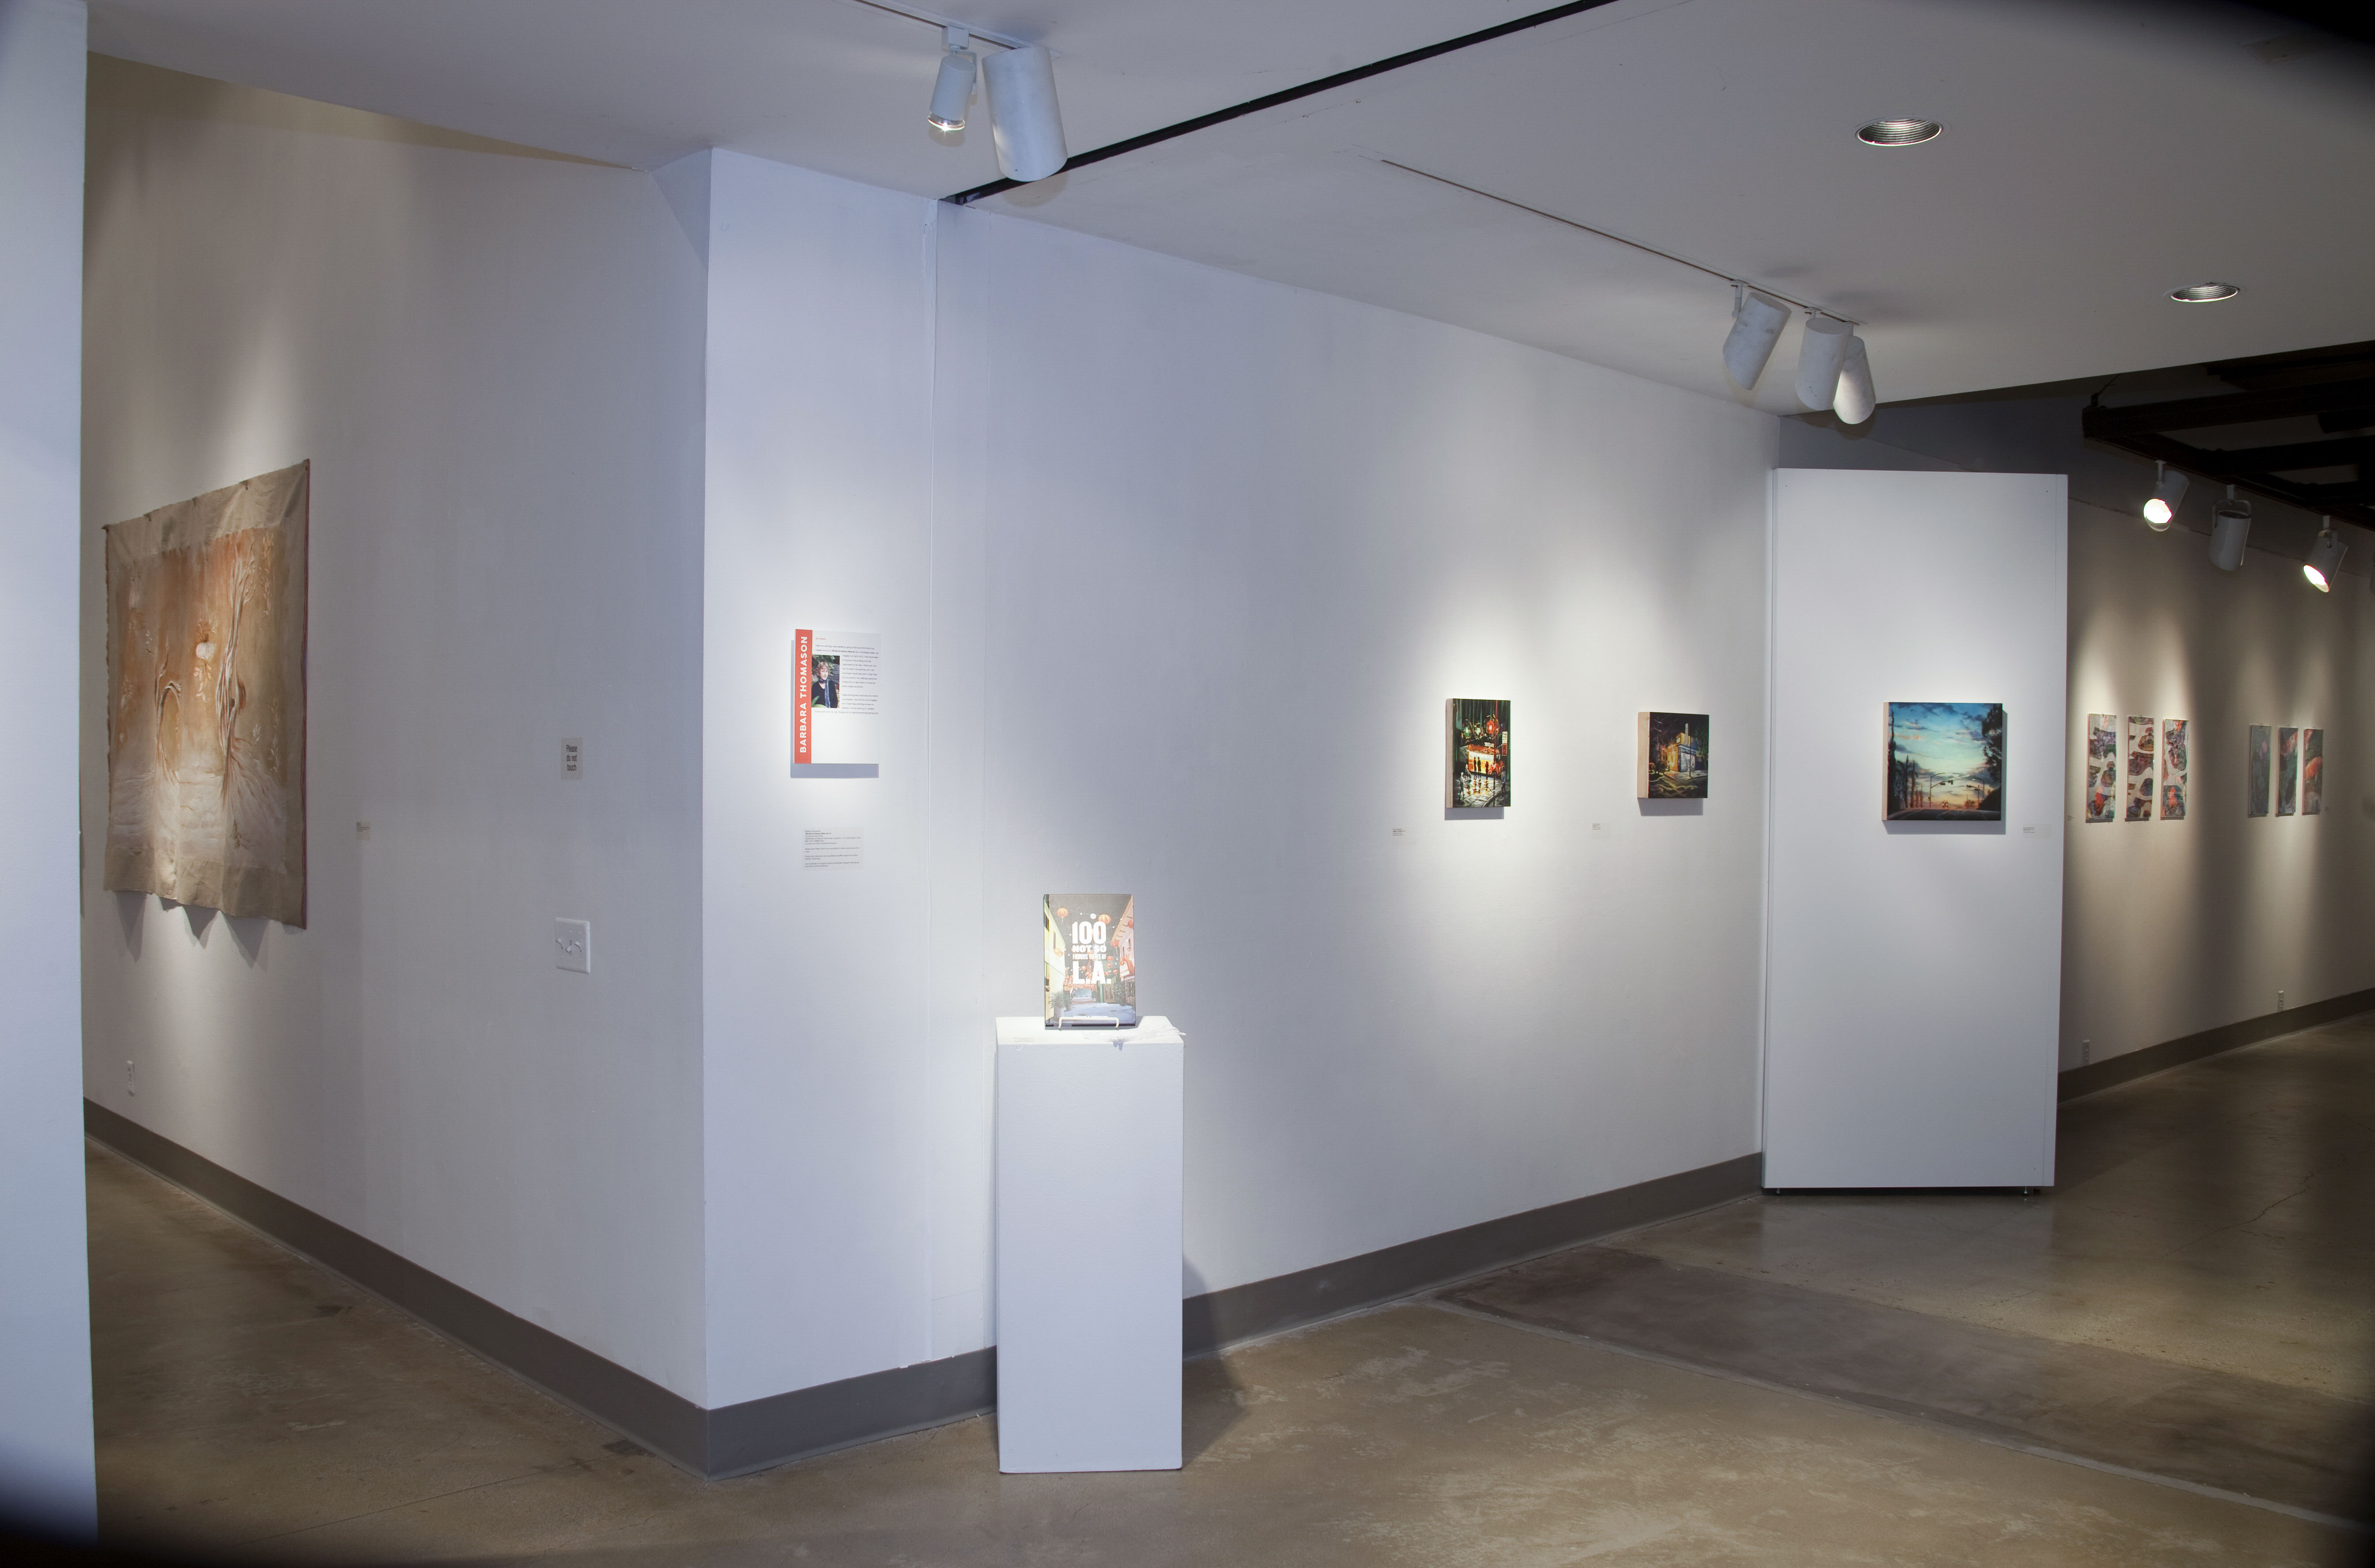 Installation View, Corridor of Gallery, Art Faculty Show 2014 Exhibition, Nov. 10, 2014 to Dec. 13, 2014.